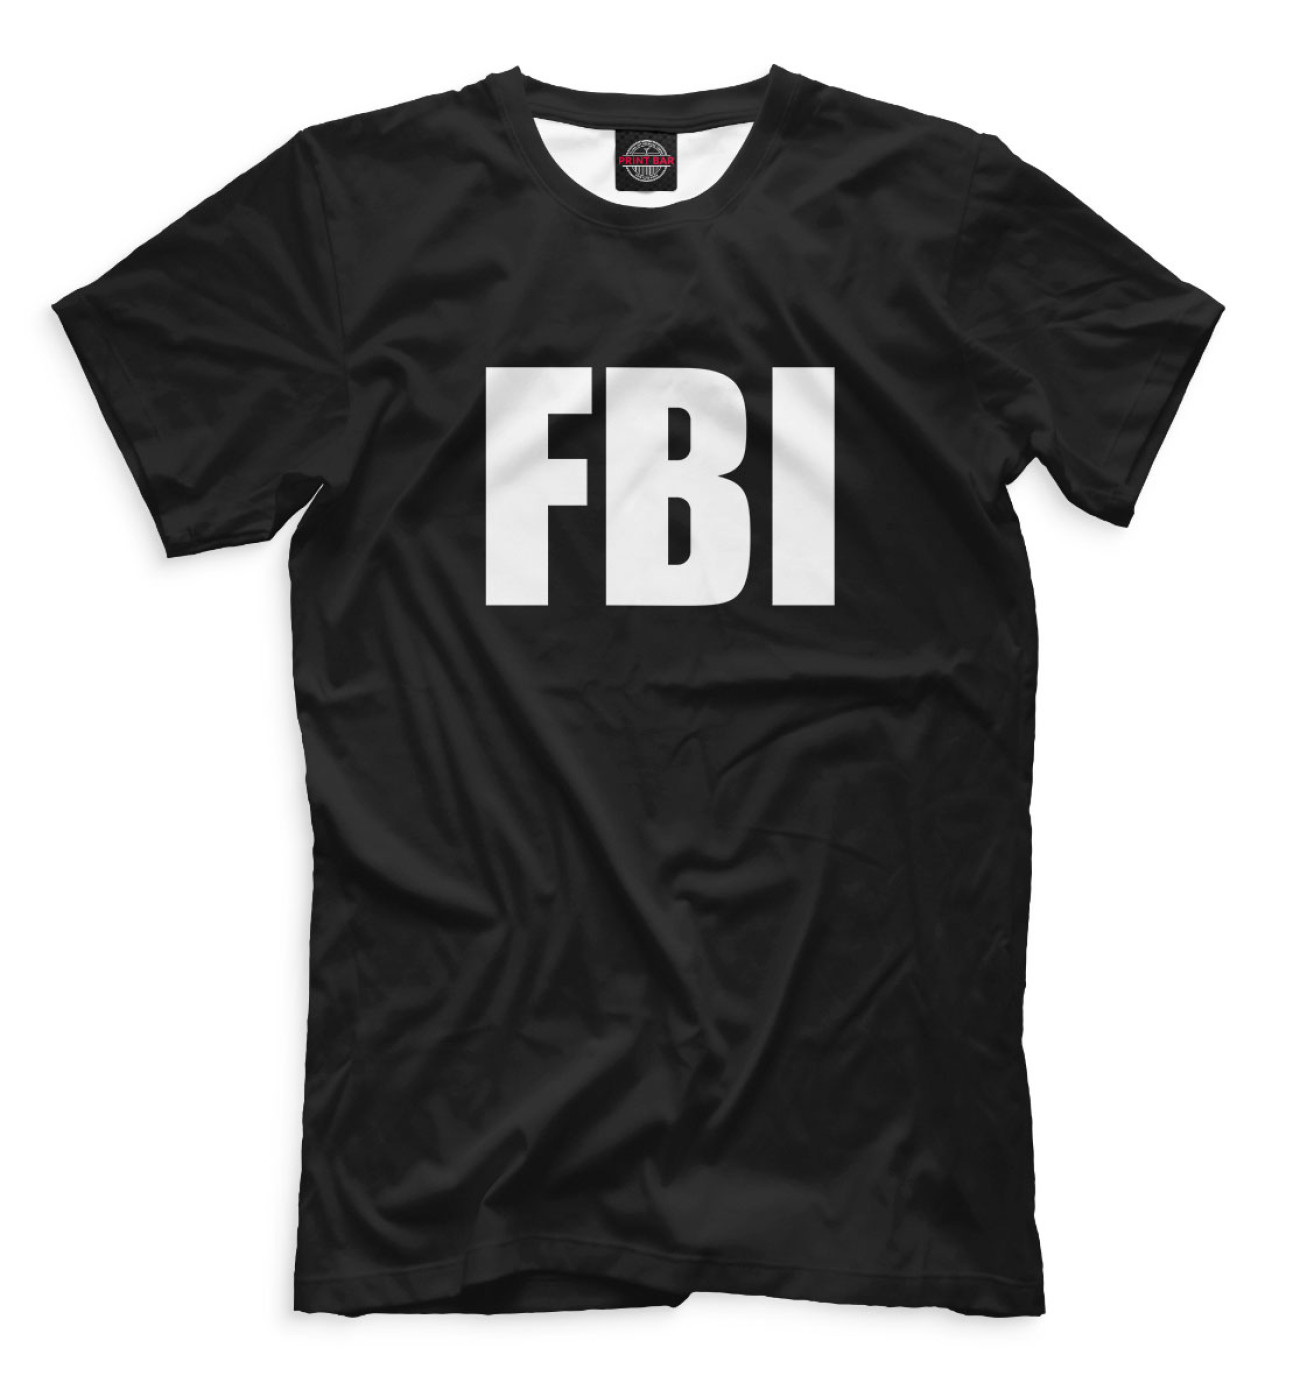 Мужская Футболка FBI, артикул: FBI-916315-fut-2